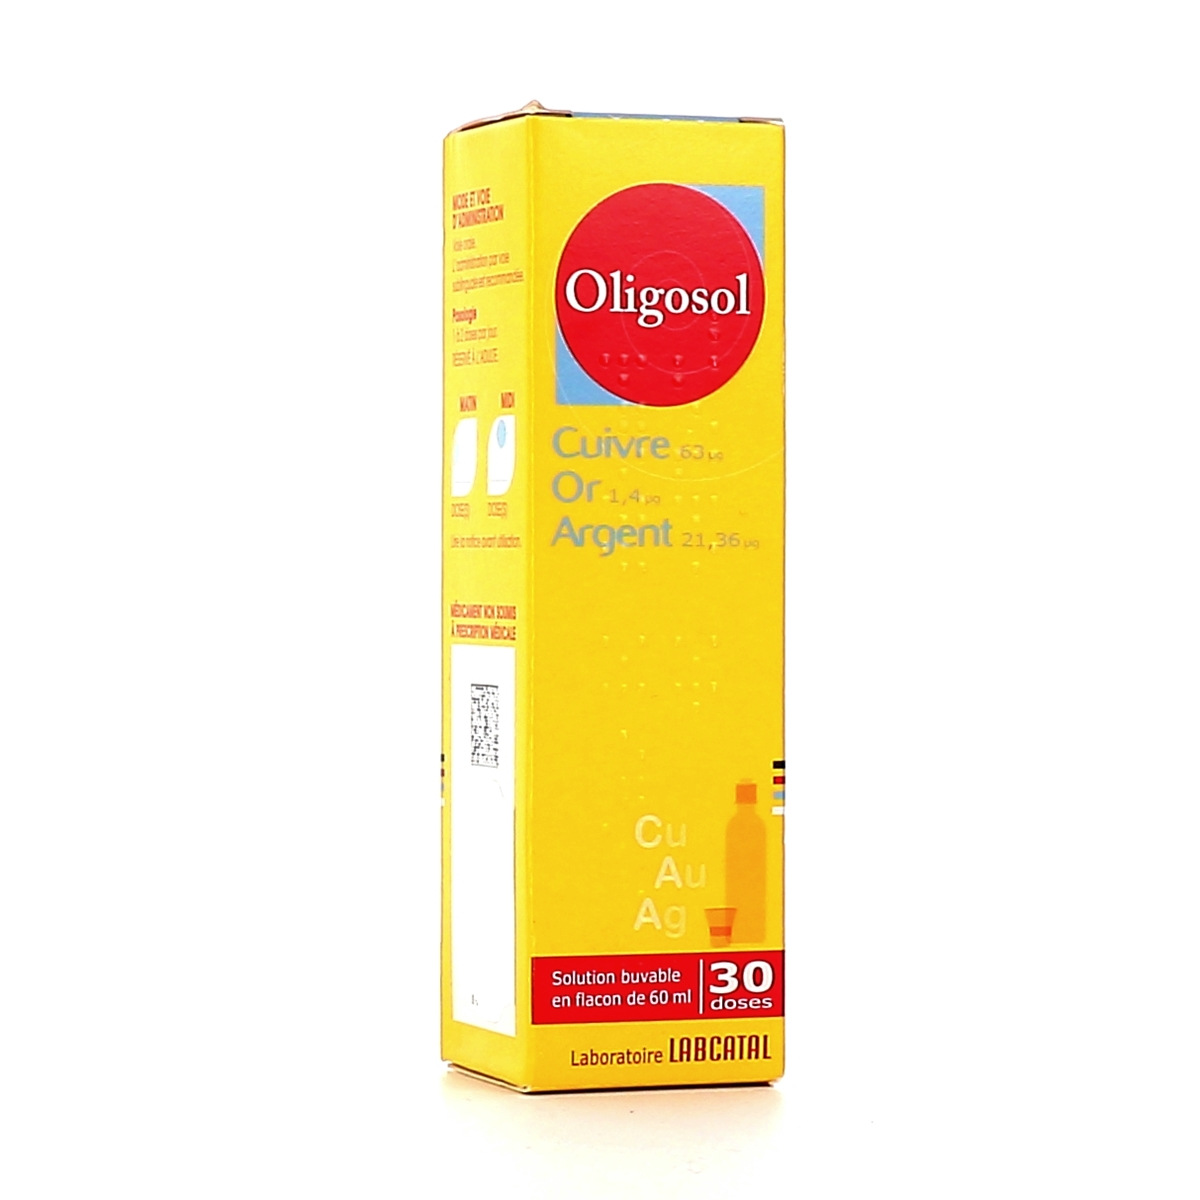 Oligosol Cuivre Or Argent - 60ml - Pharmacie en ligne